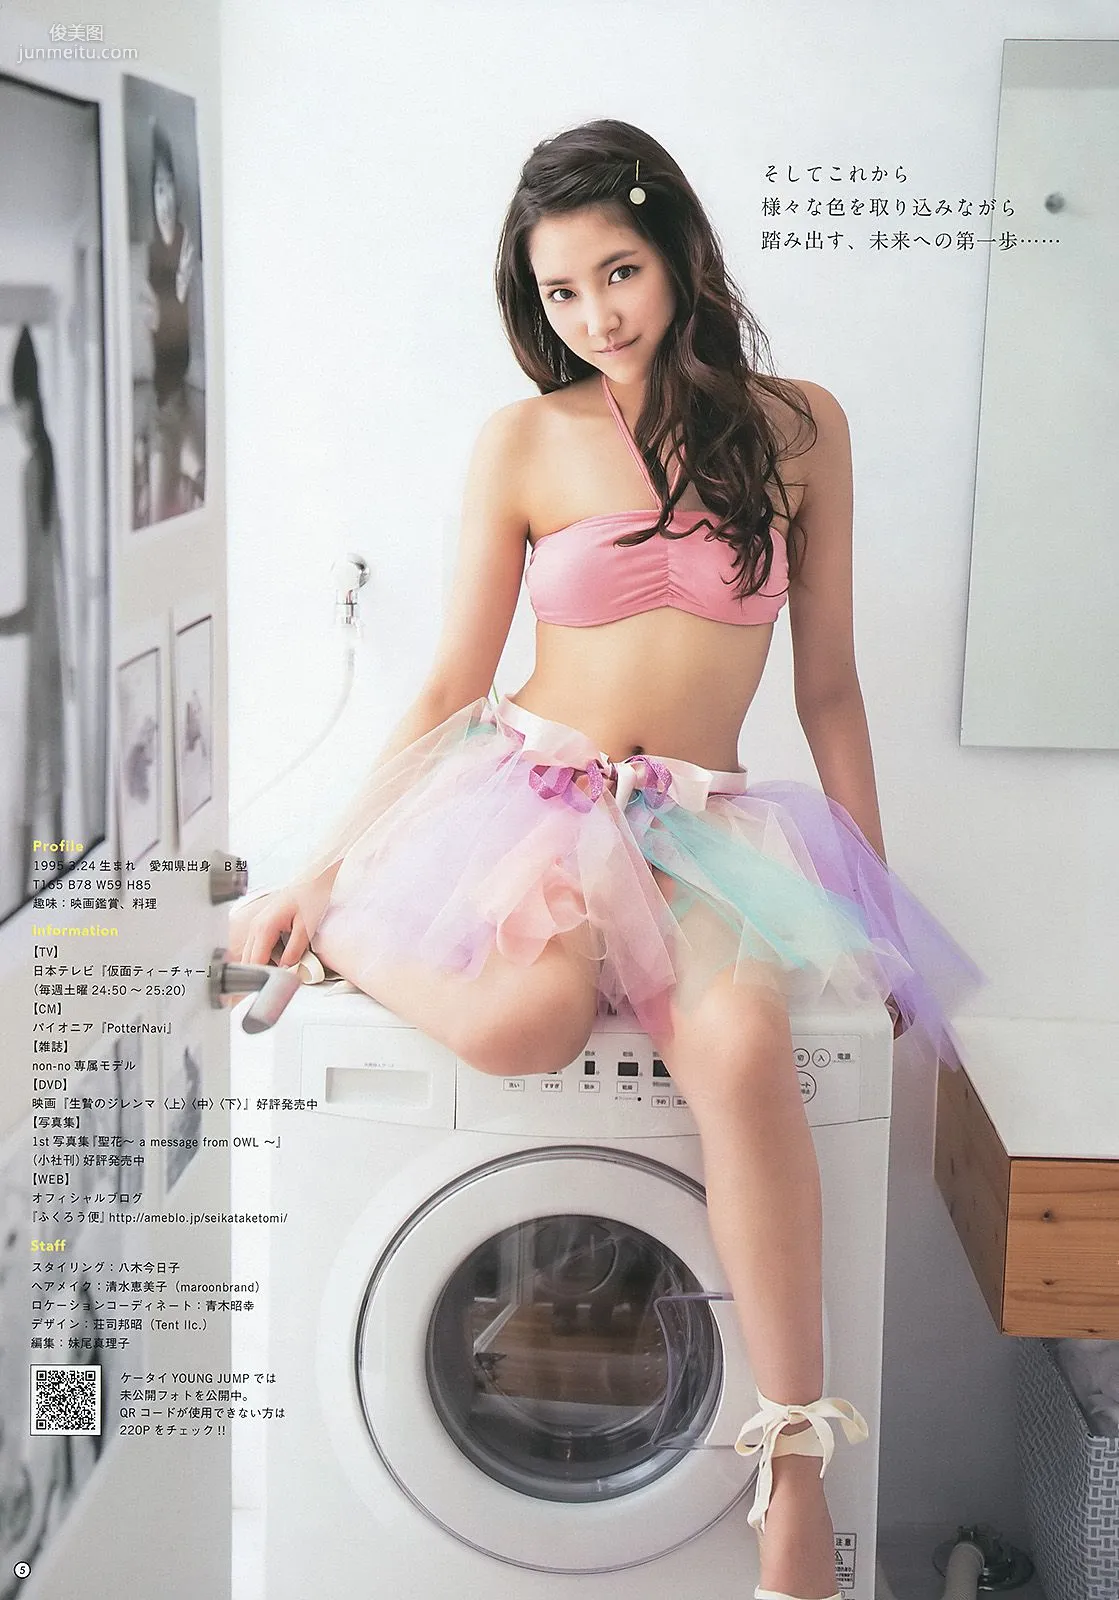 指原莉乃 根岸愛 竹富聖花 [Weekly Young Jump] 2013年No.39 写真杂志18